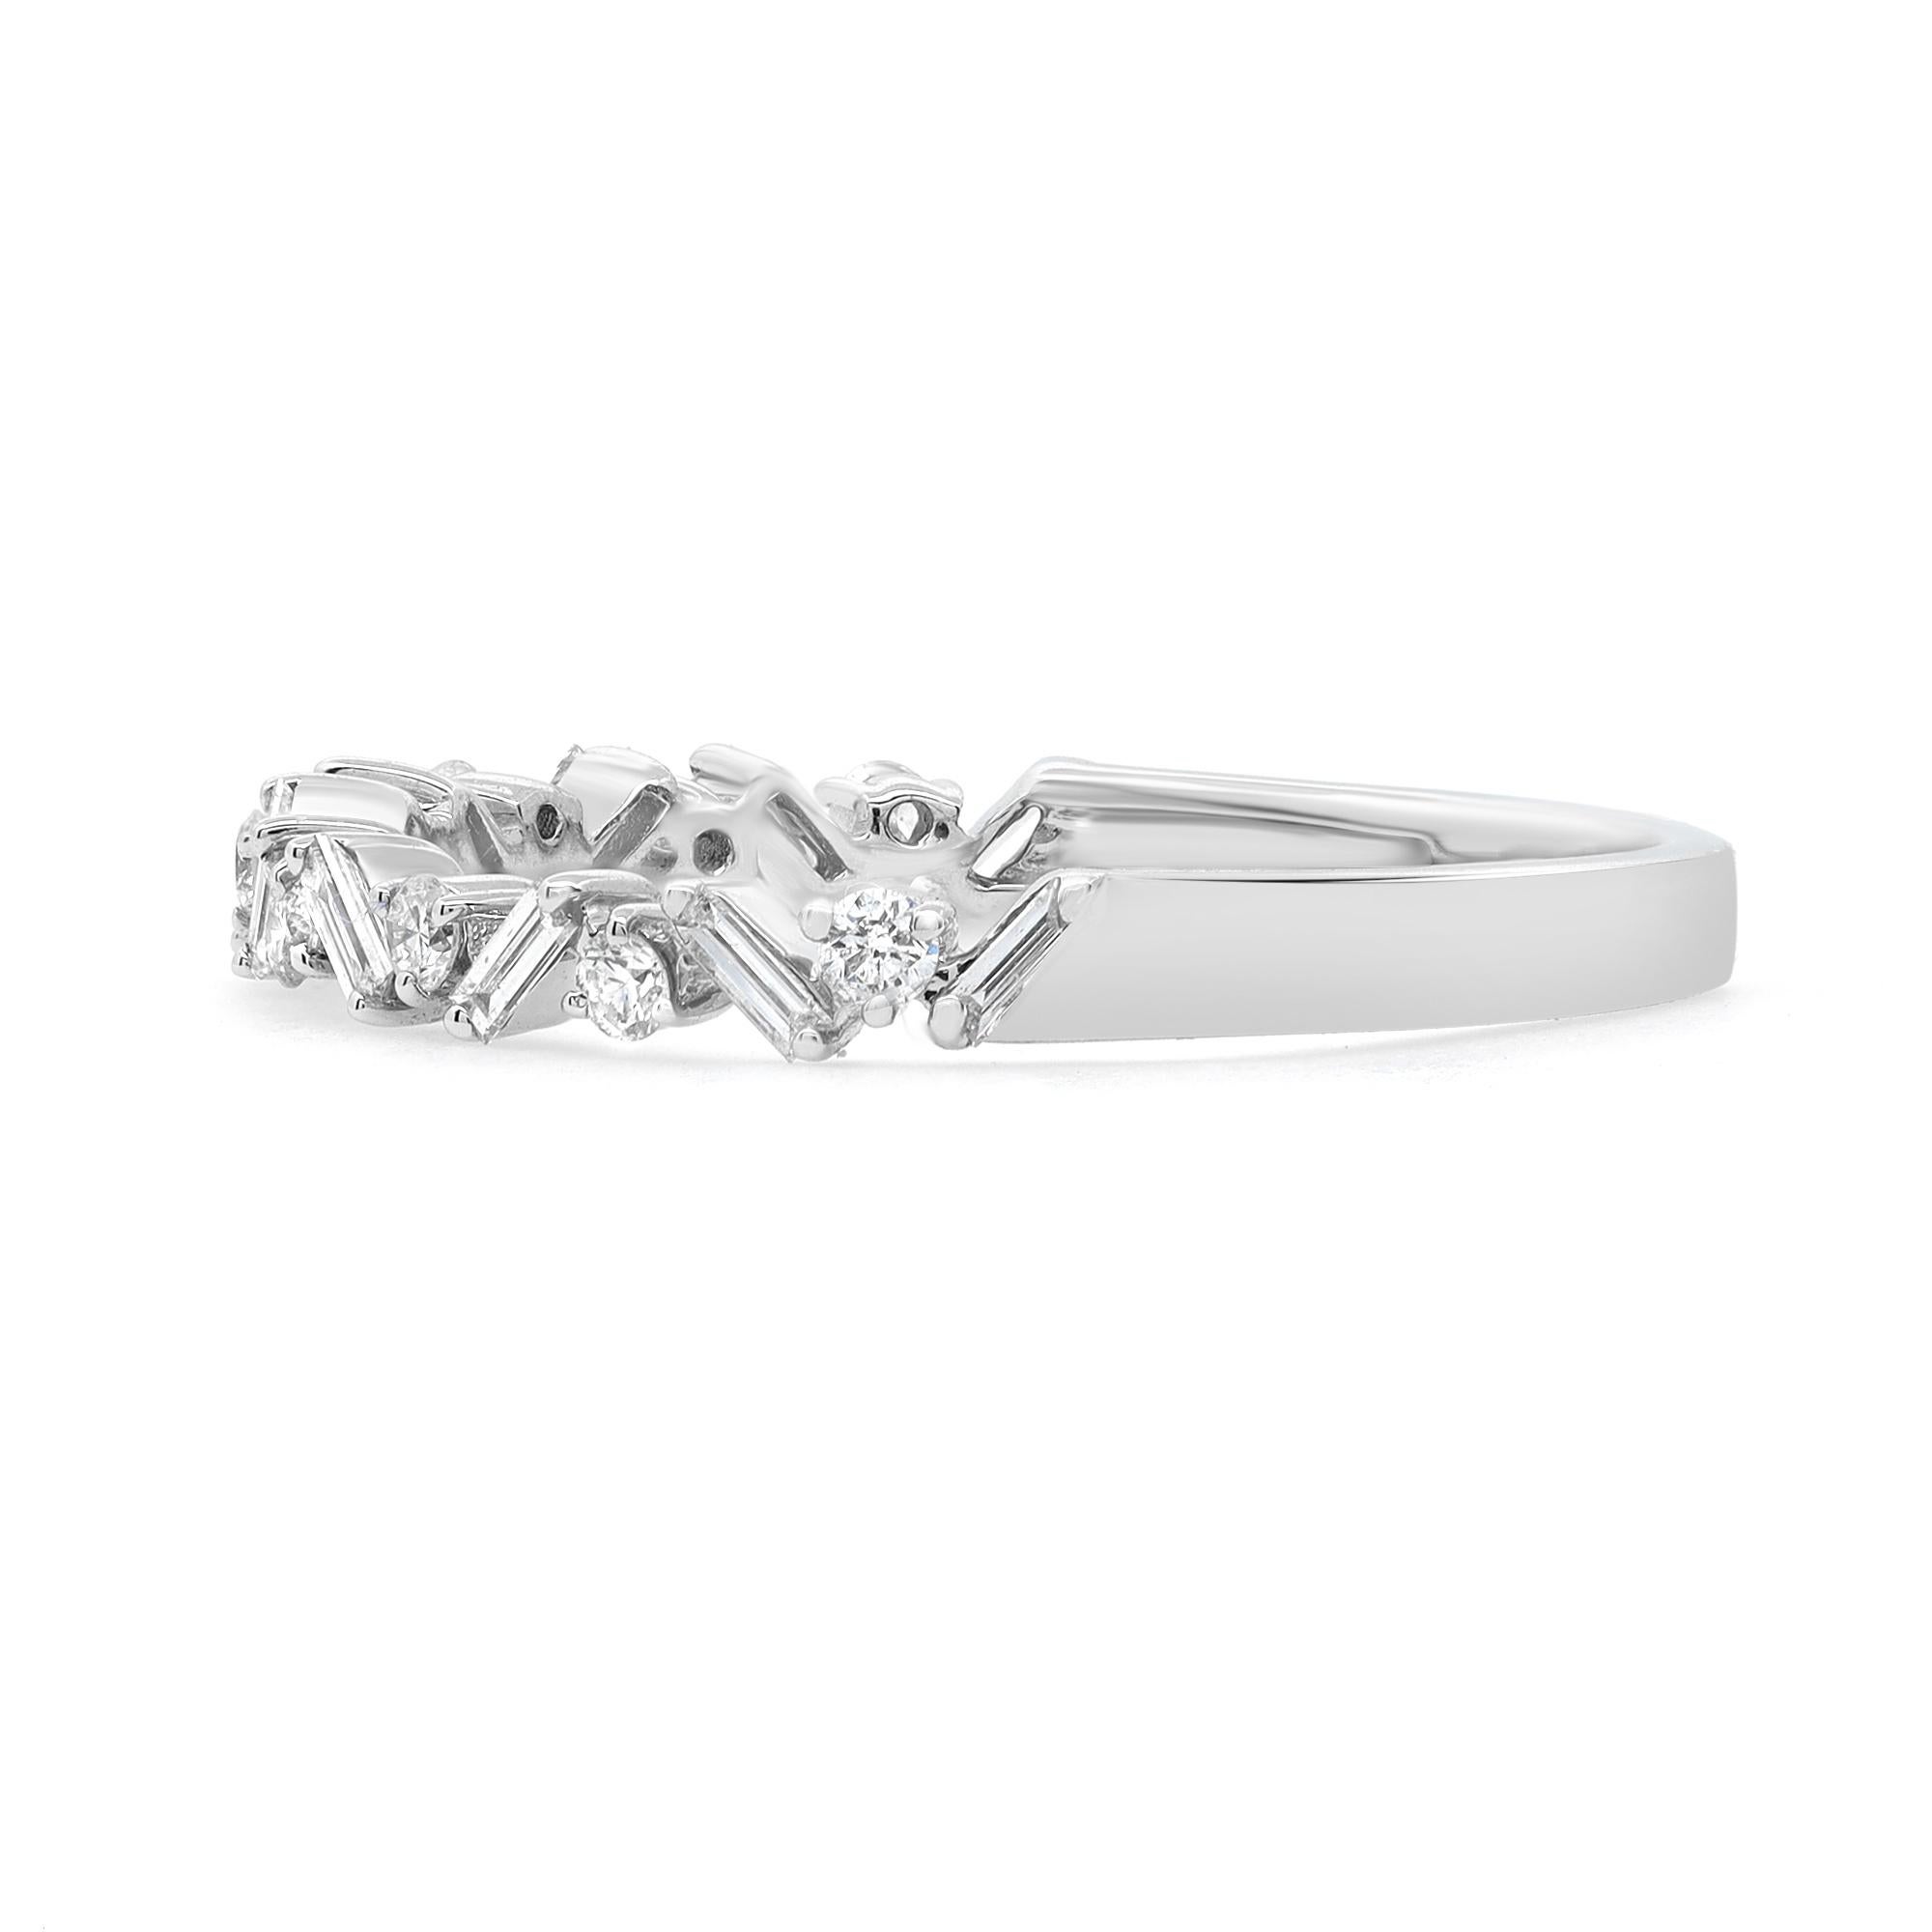 Schlichter und zarter Diamantring aus 18 Karat Weißgold. Dieser Ring zeichnet sich durch zackenförmig gefasste Diamanten im Baguetteschliff aus, die in einem Zickzackmuster gefasst sind und einen zeitlosen, auffälligen Stil darstellen. Er ist